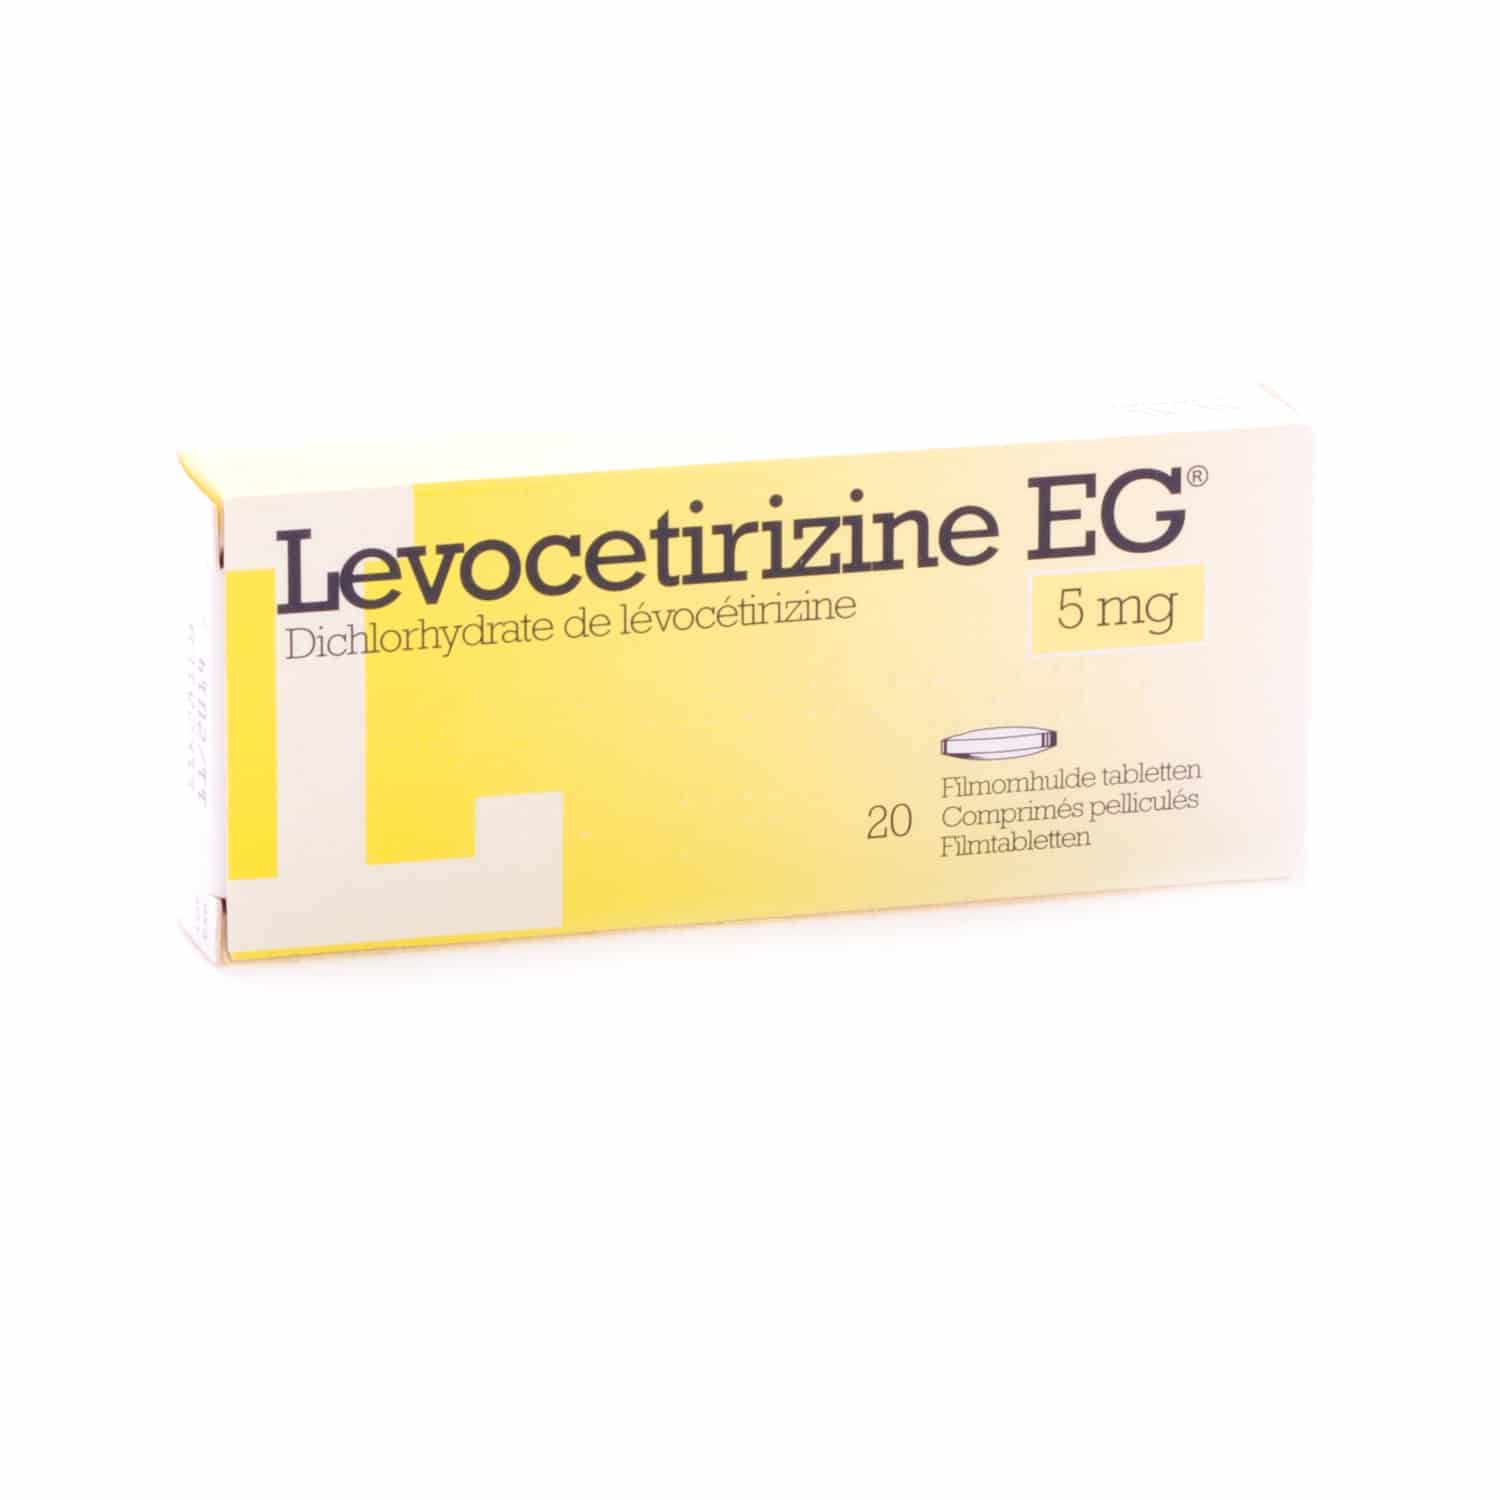 Levocetirizine EG 5 mg